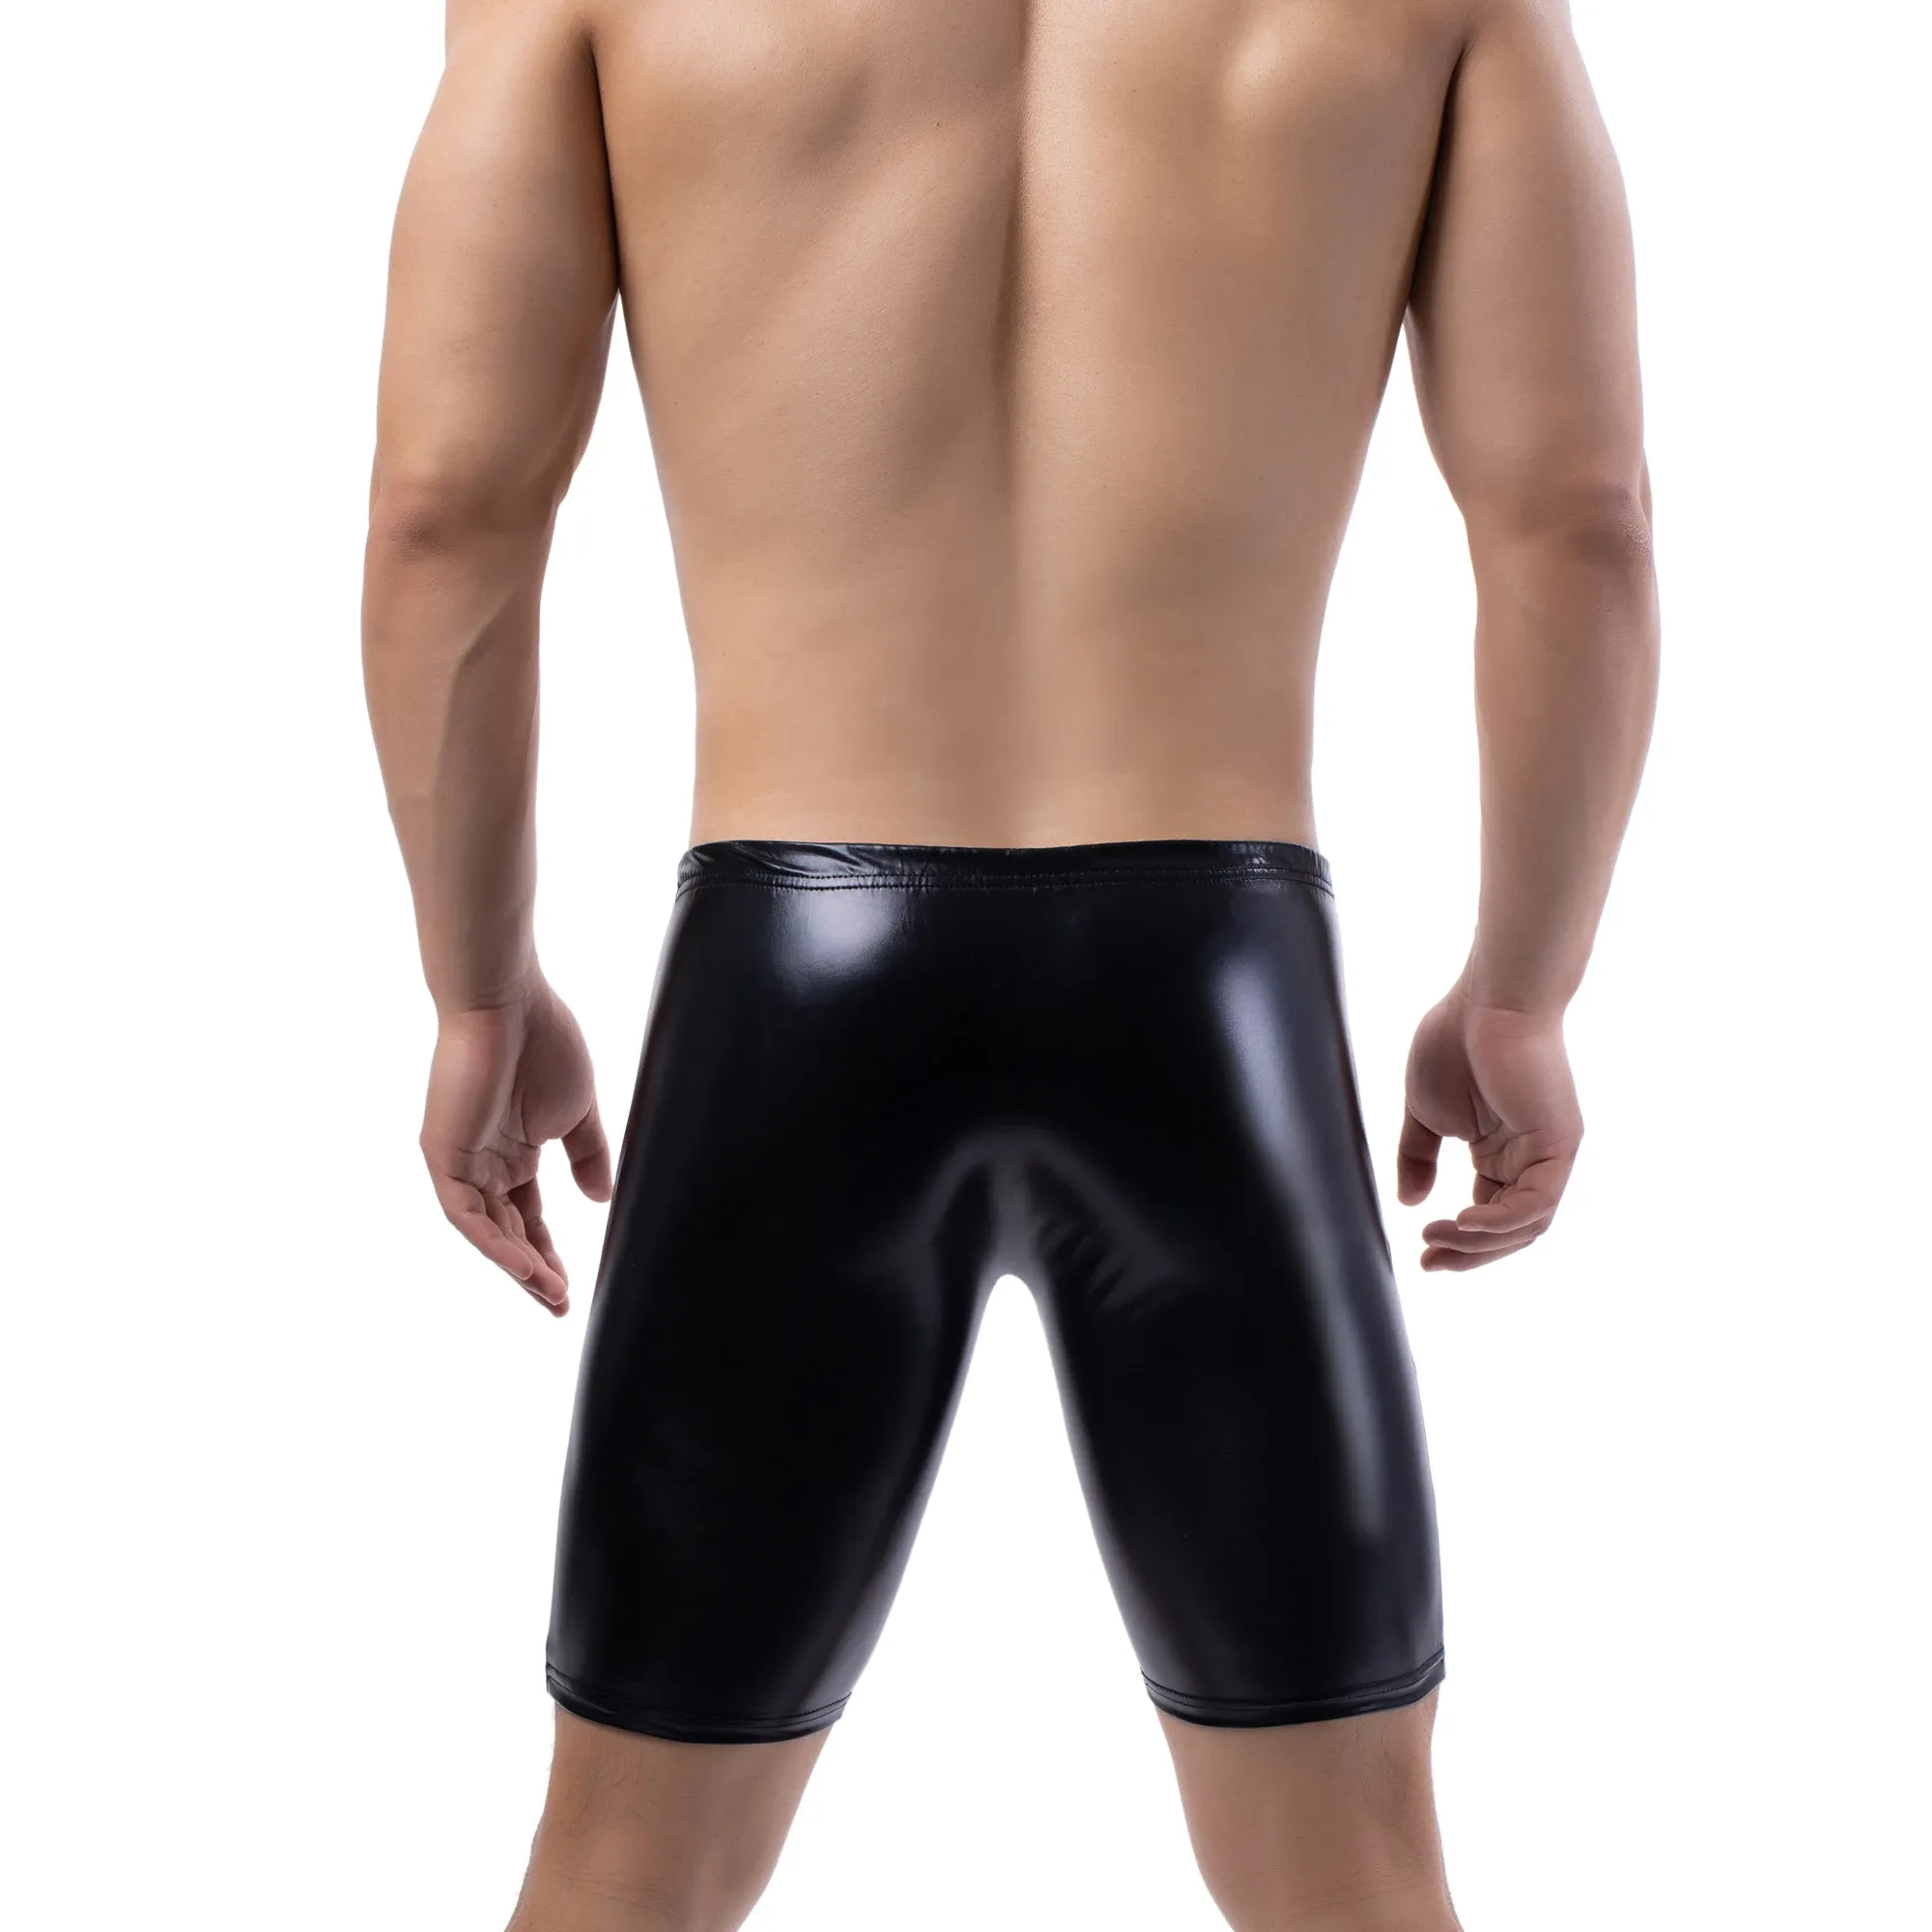 Yufeida sexy maschile in pelle pantaloncini stretti slip boxer stretti pantaloncini da festa costumi in pelle di lingerie nera pantalone corto